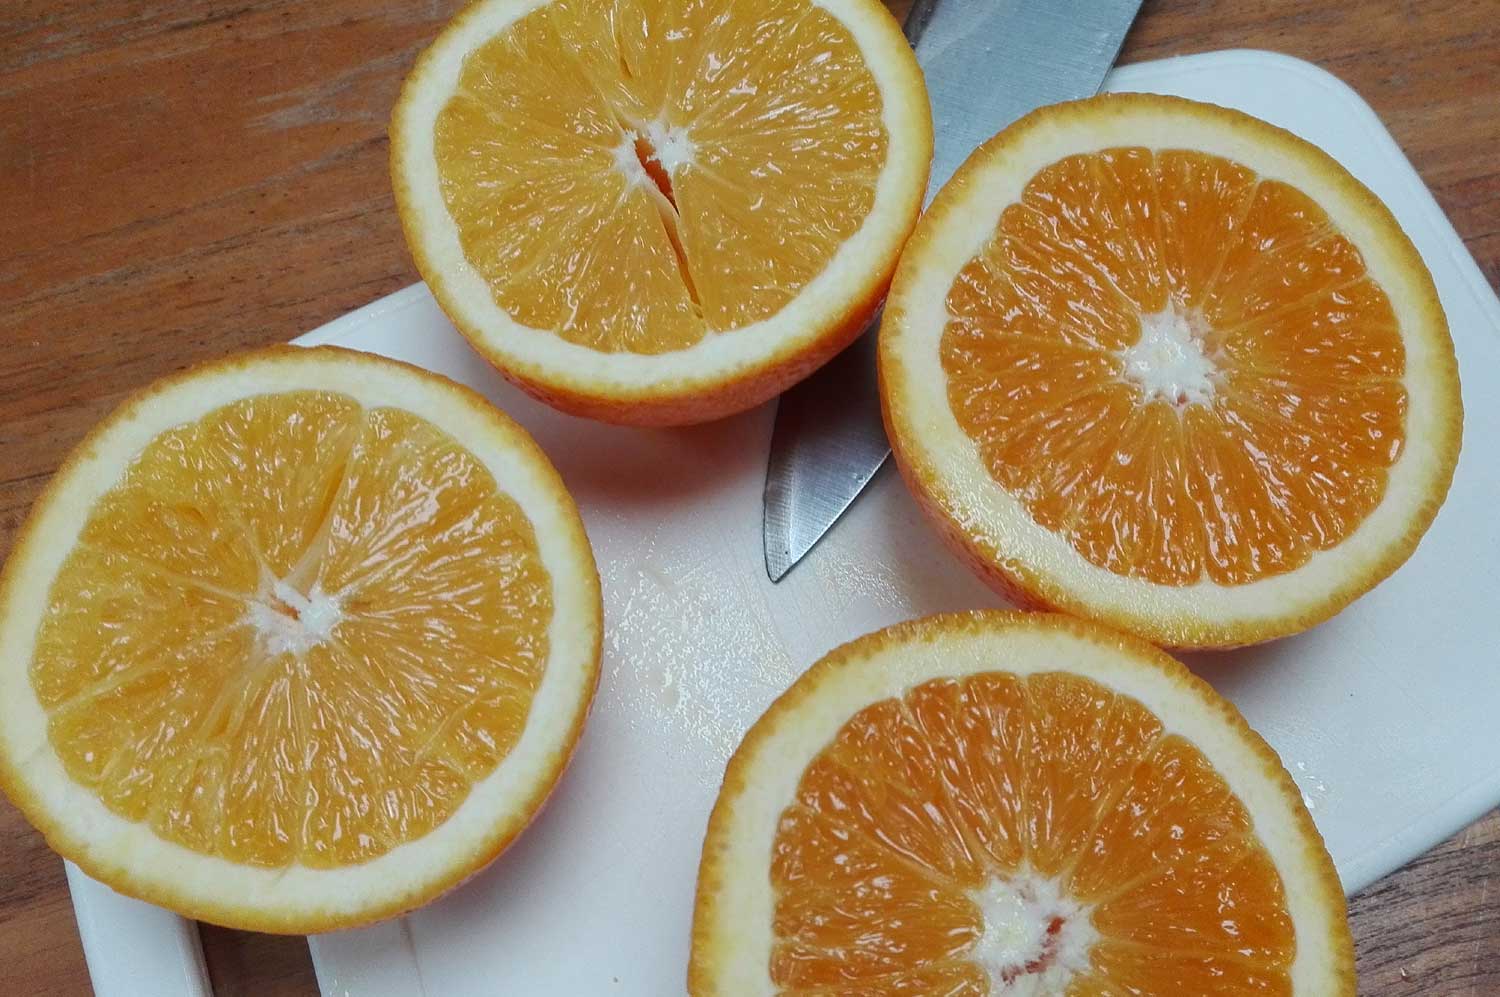 sinaasappel-mes-snijplank-fruit-vers